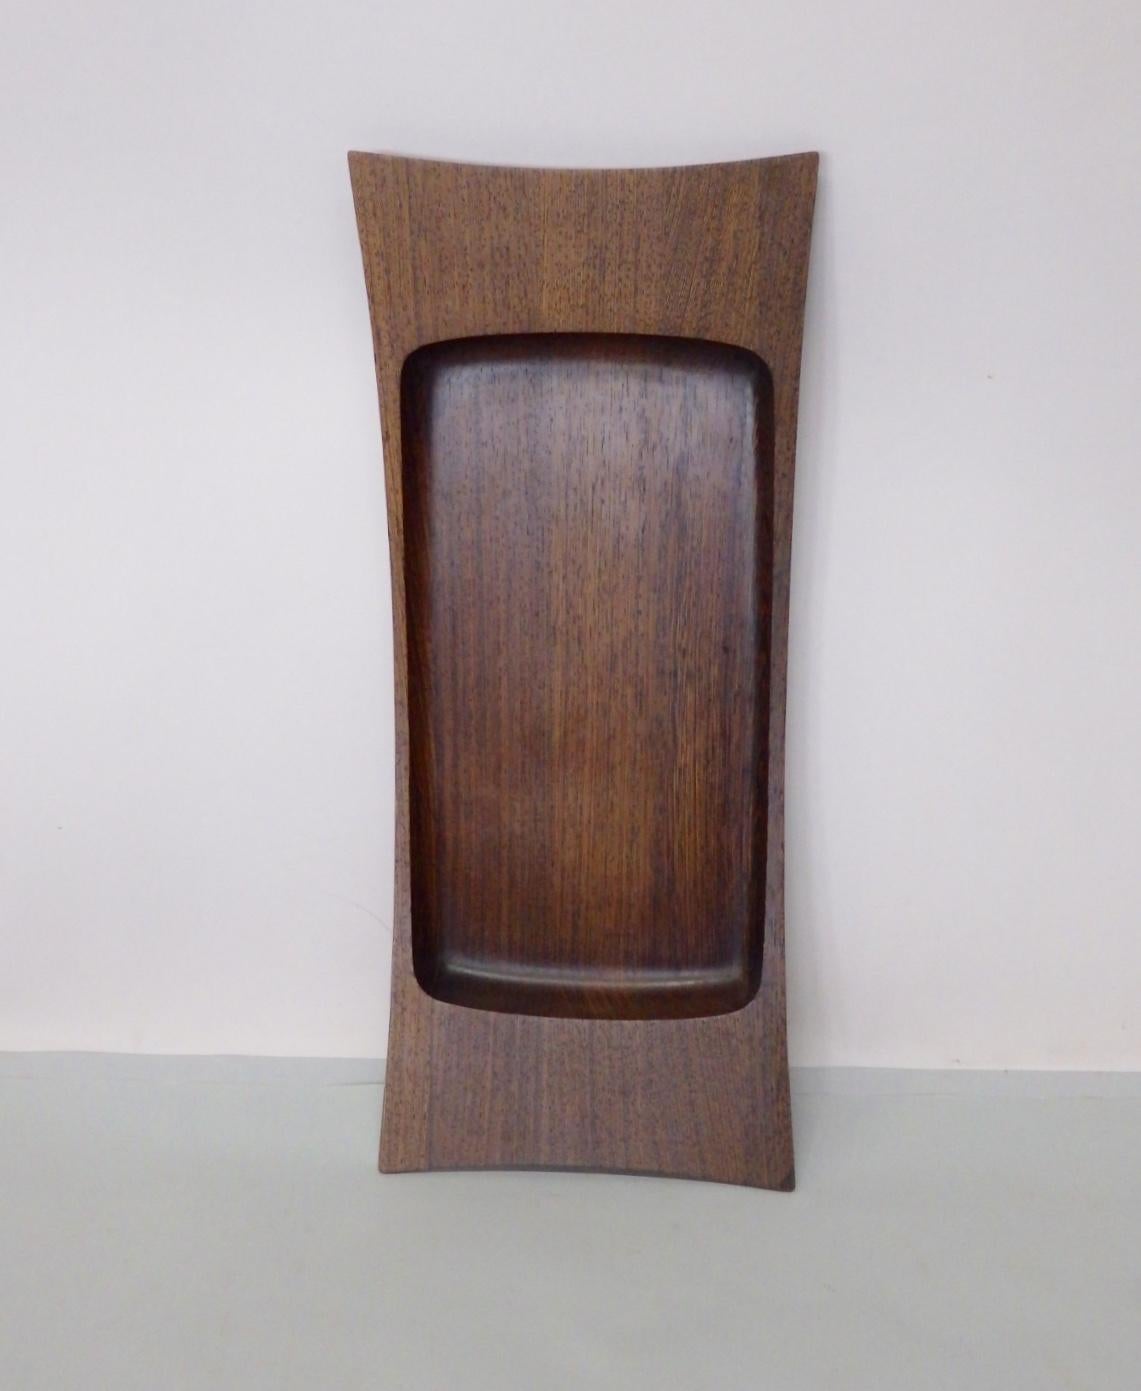 Danish Jens Quistgaard for Dansk Low Profile Wenge Wood Serving or Dresser Tray For Sale